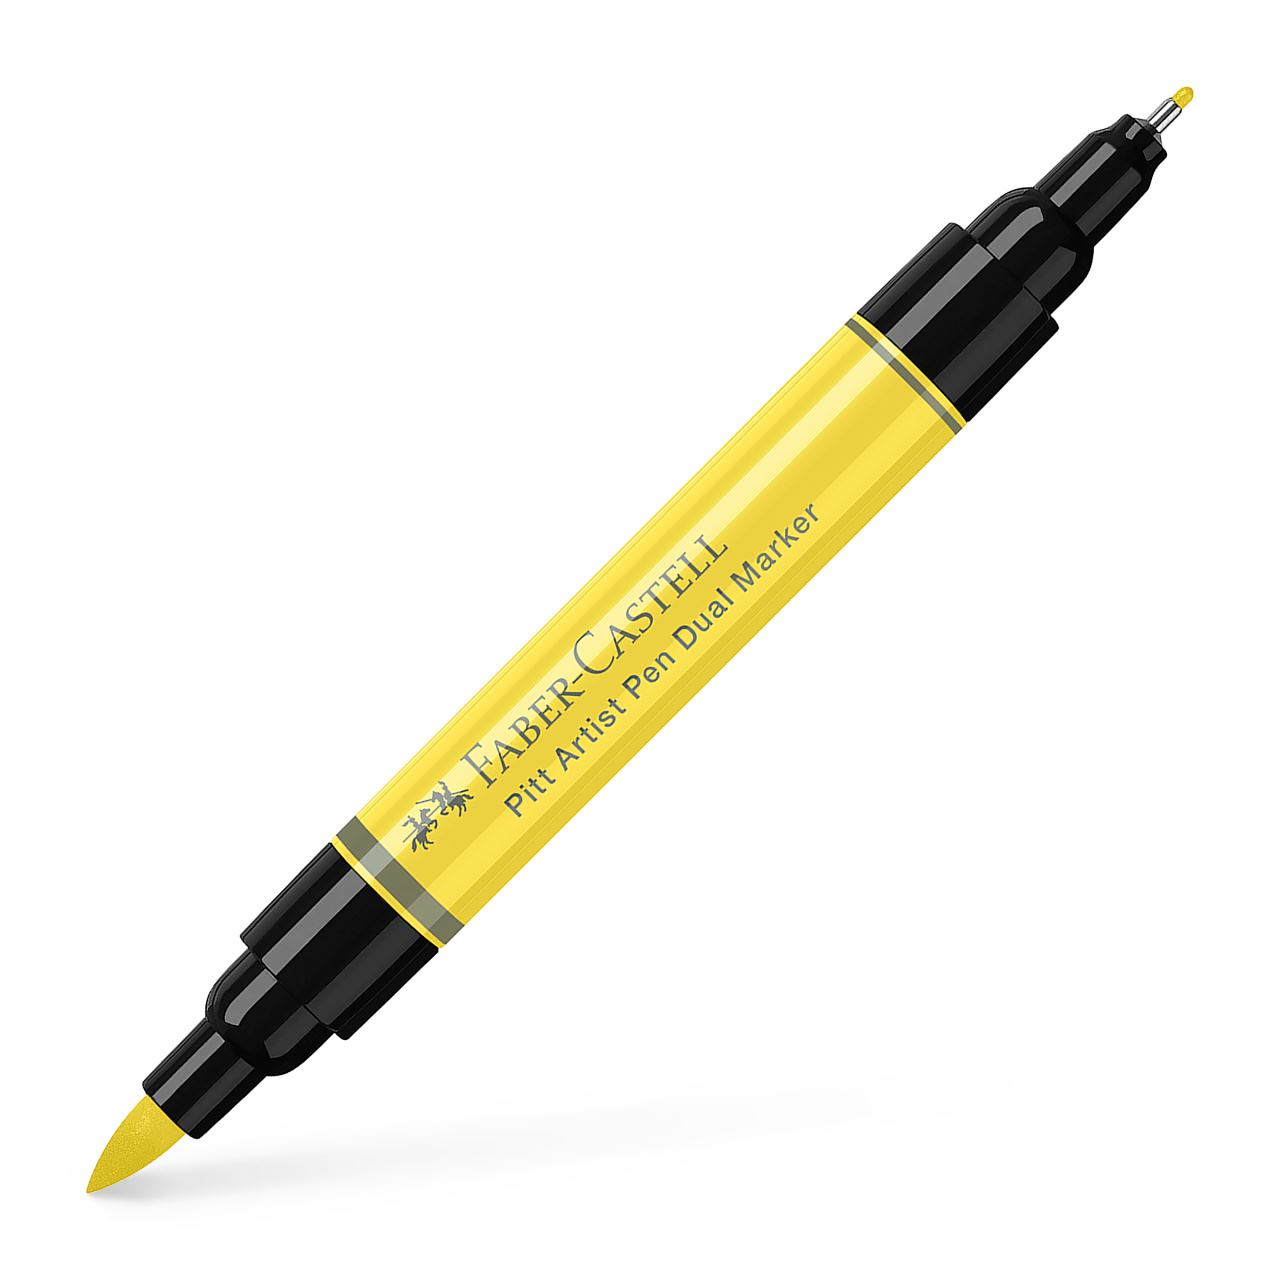 Faber-Castell - Pitt Artist Pen Dual Marker India ink, light yellow glaze